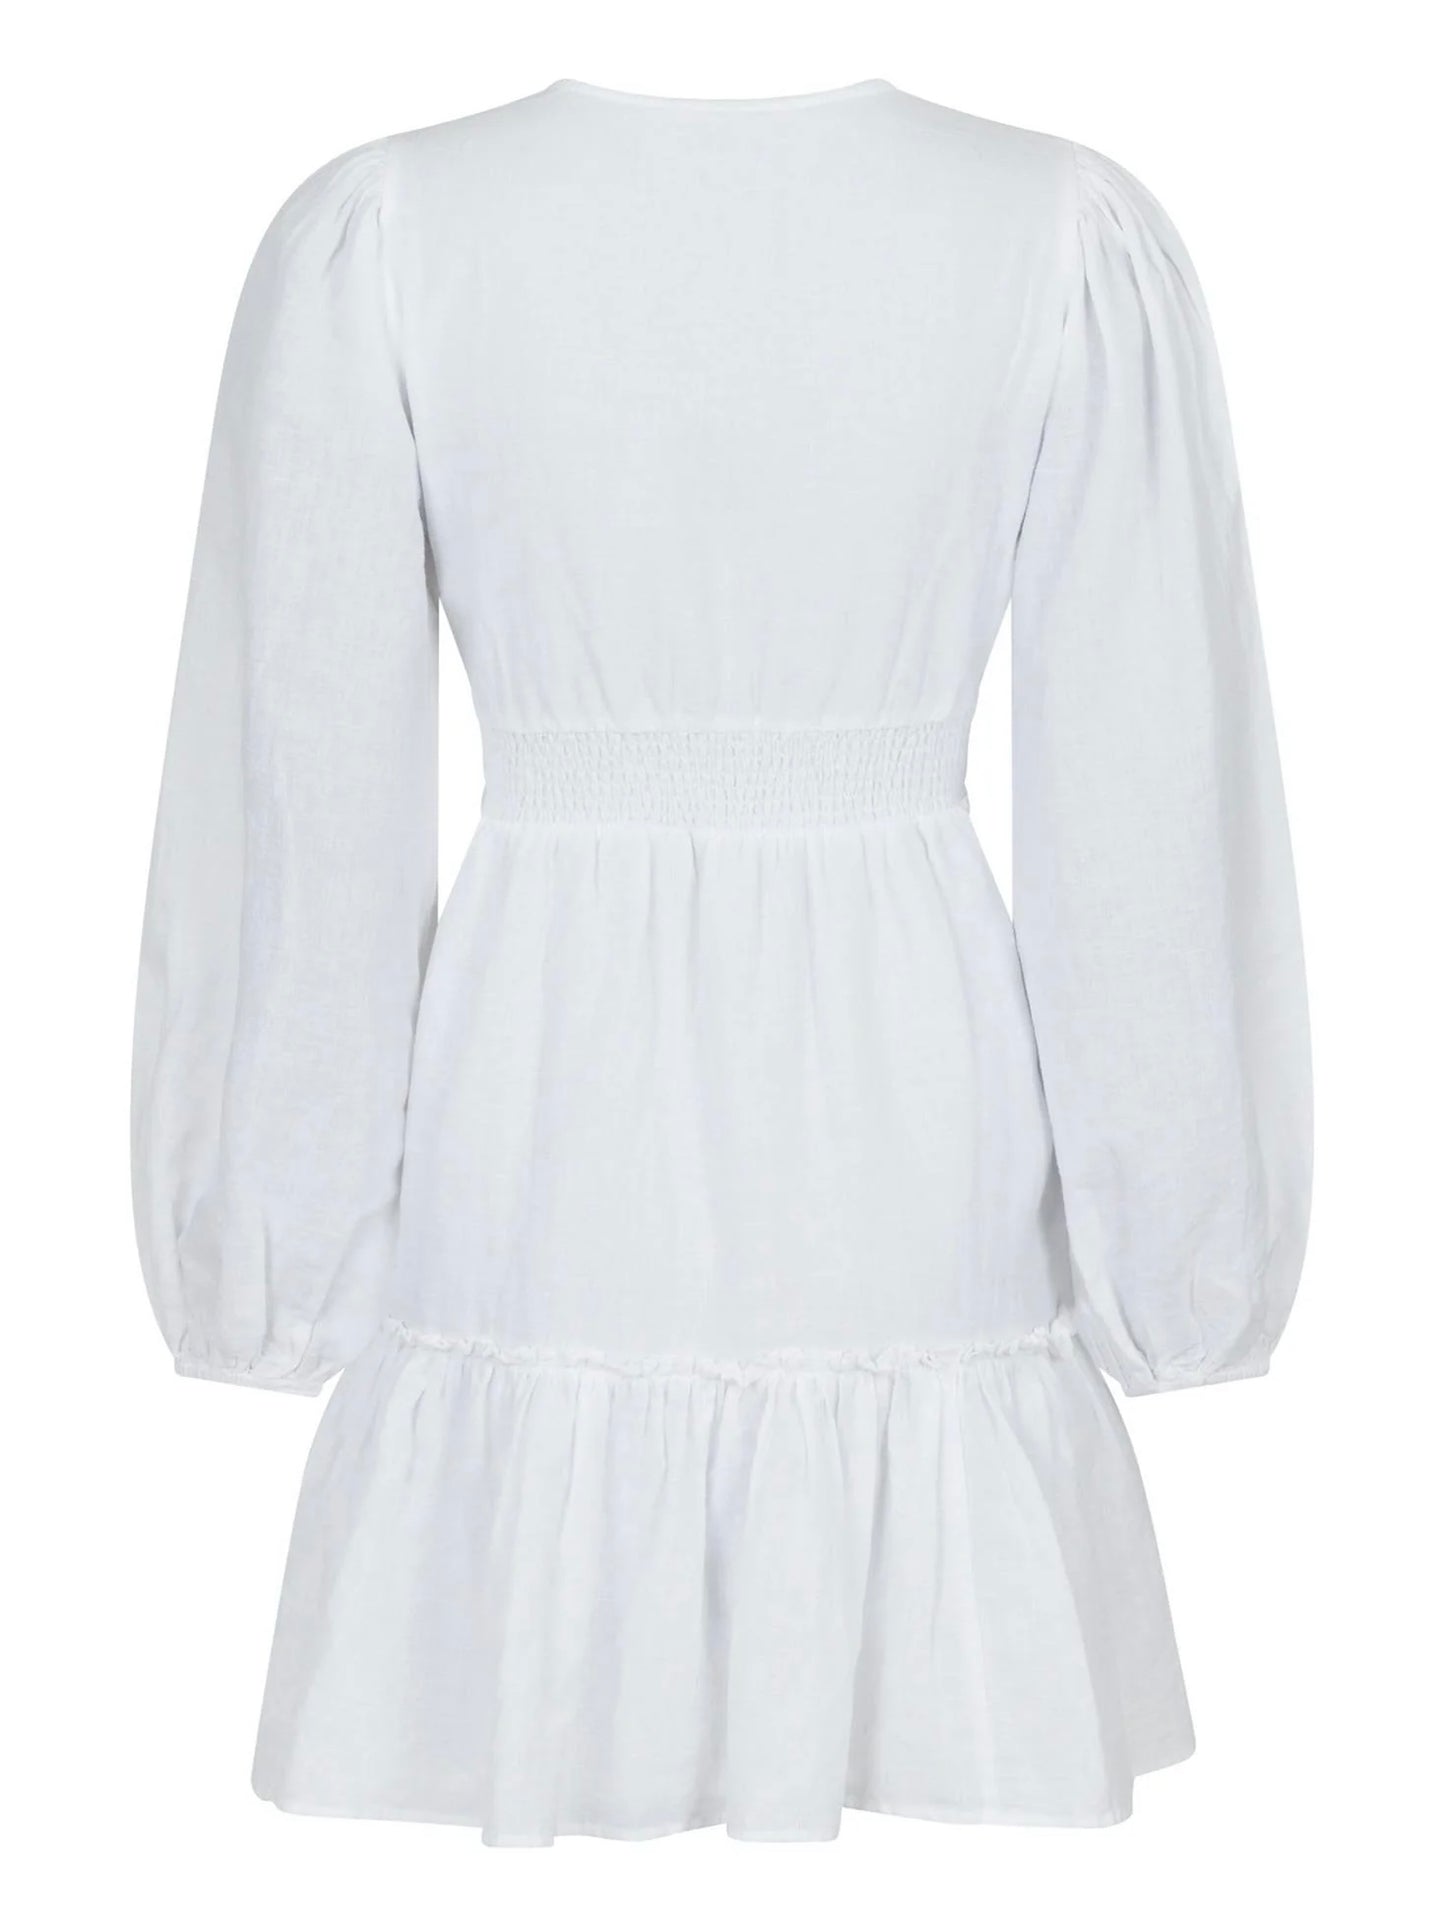 
                  
                    NEO NOIR RIHANA LINEN DRESS WHITE
                  
                